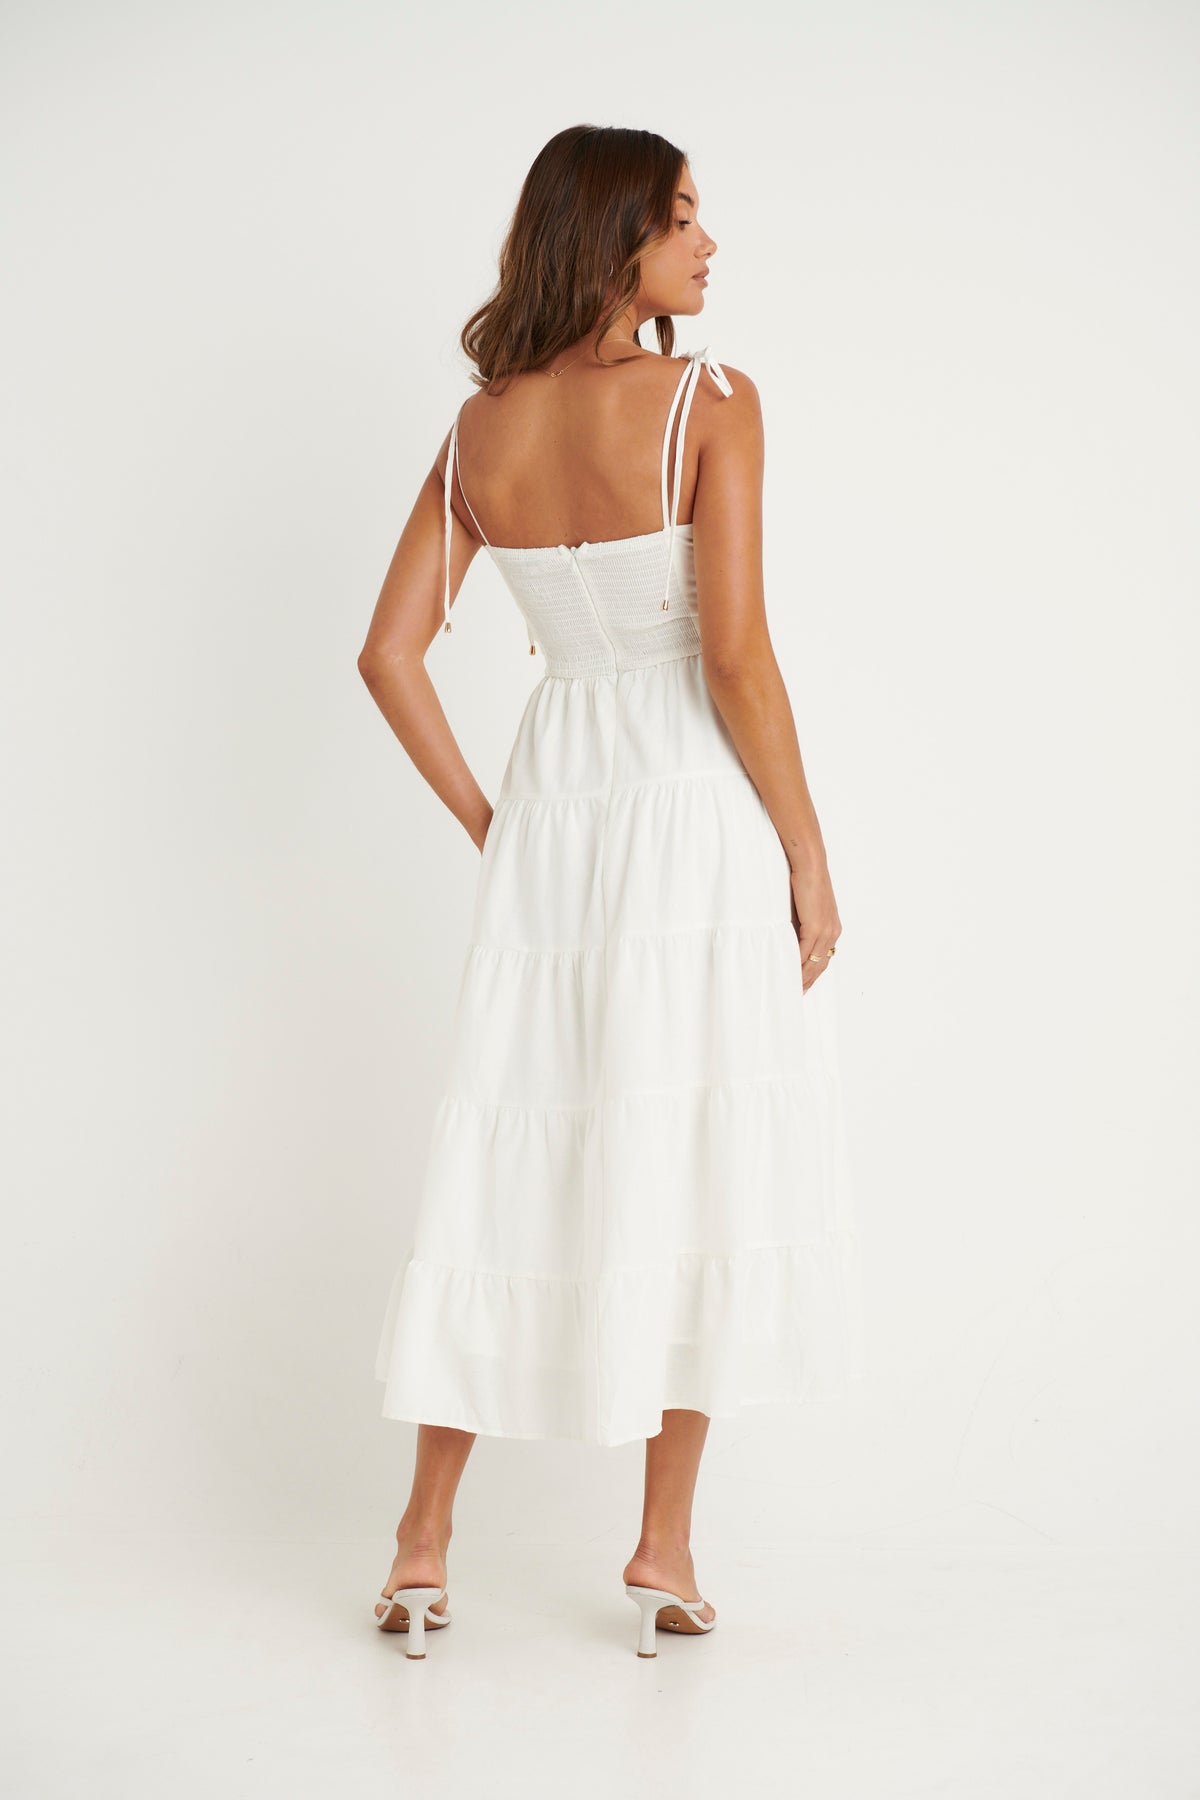 Tallulah Midi Dress White - FINAL SALE